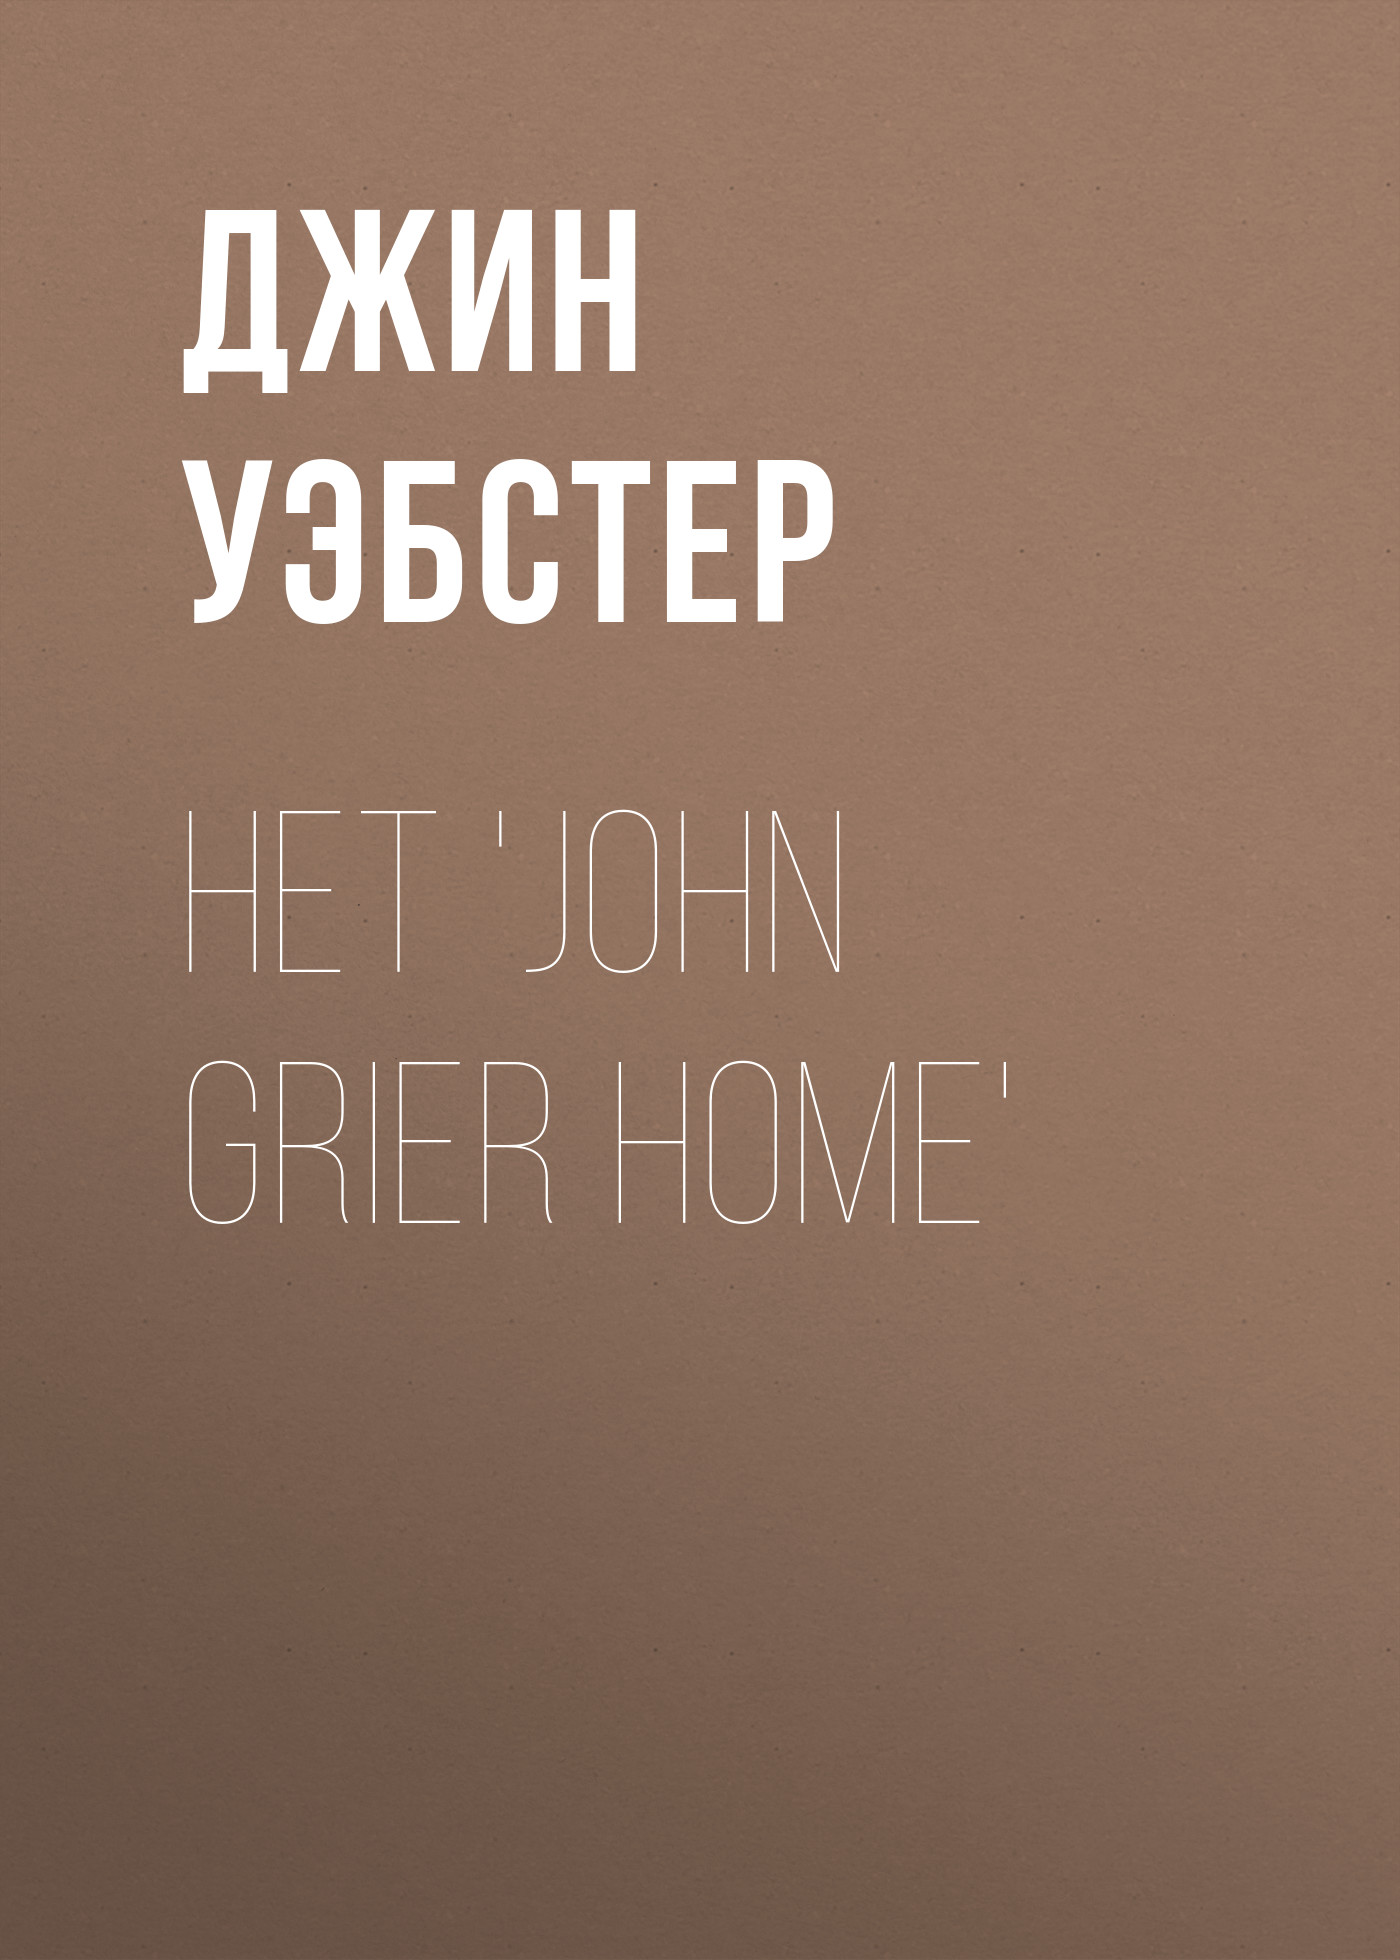 Книга Het 'John Grier Home' из серии , созданная Джин Уэбстер, может относится к жанру Зарубежная классика, Зарубежная старинная литература. Стоимость электронной книги Het 'John Grier Home' с идентификатором 34337482 составляет 0 руб.